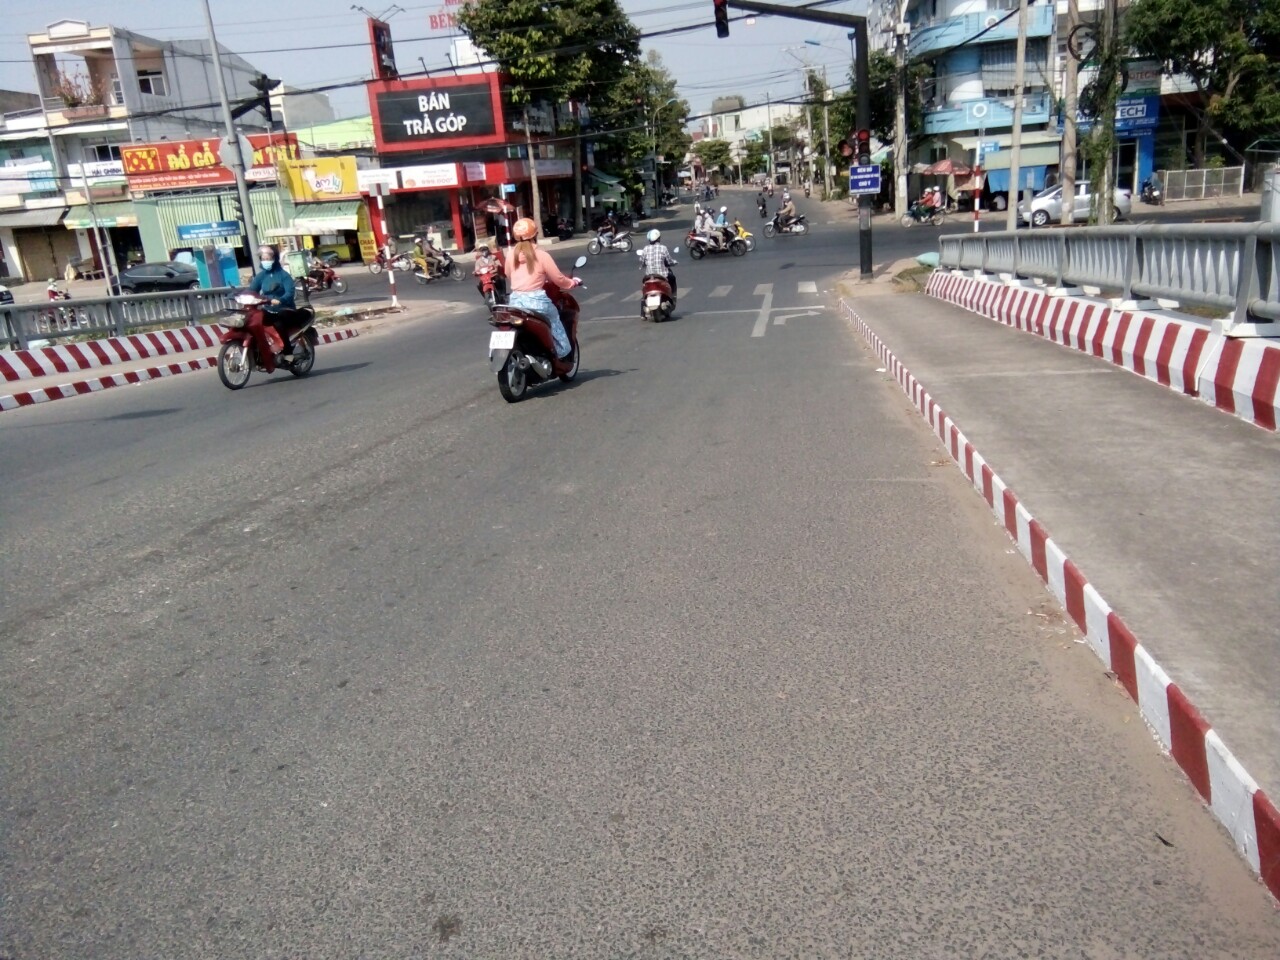 Bán đất đường Nguyễn Thái Học phường hoà thuận.